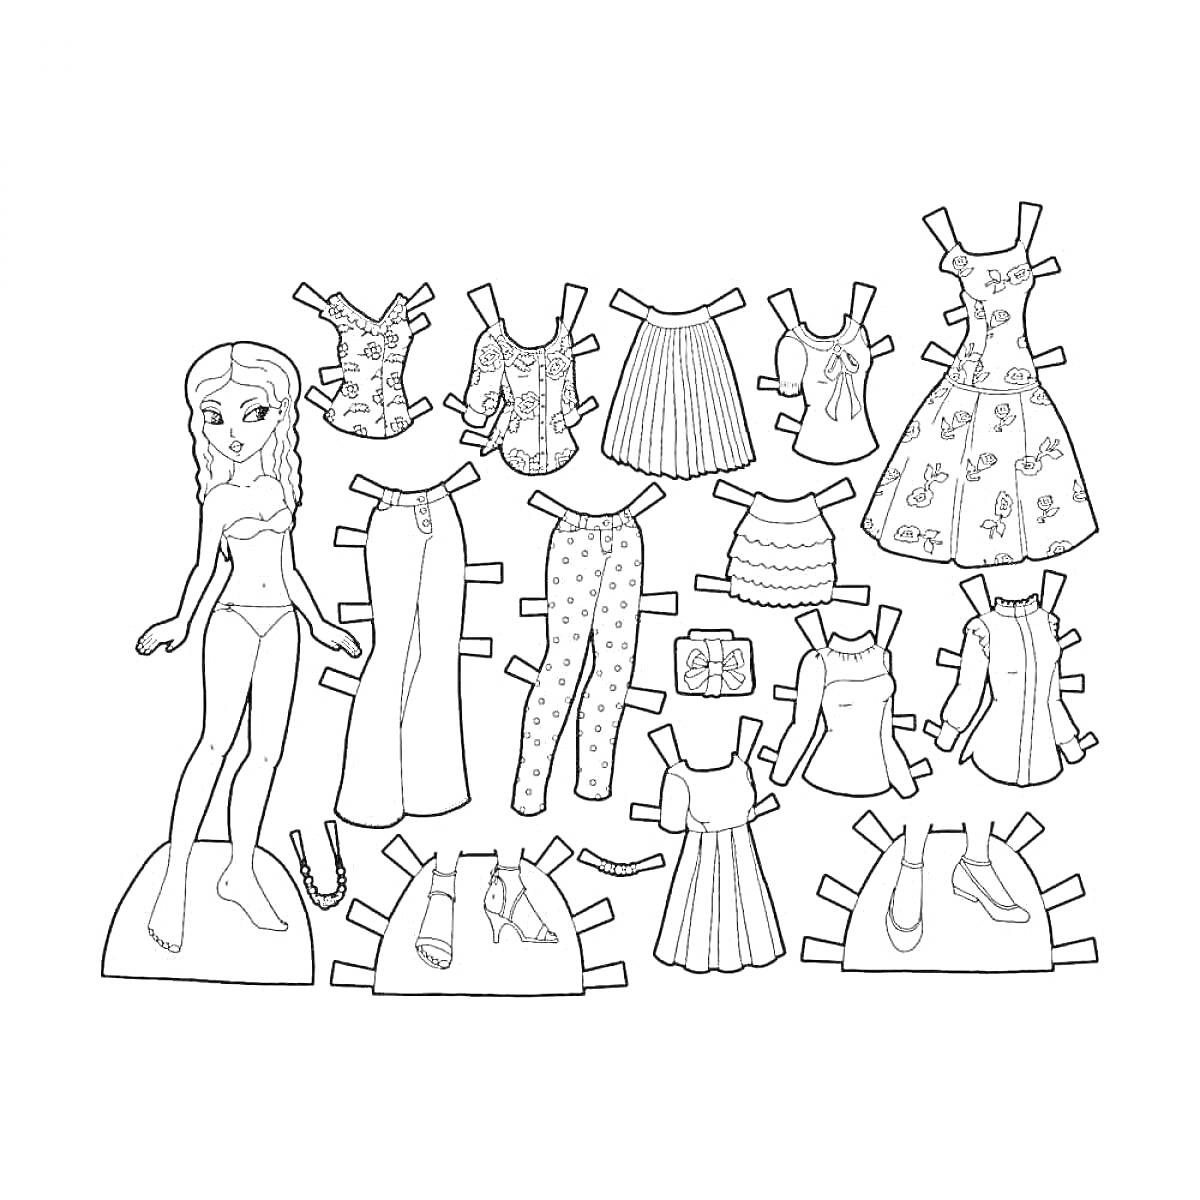 Раскраска Утка Лалафанфан с гардеробом для вырезания - 14 нарядов (5 топов, 1 юбка, 1 платье, 2 пары брюк, 2 пары шорт, 1 юбочный комбинезон, 1 платье-сарафан, 1 сумка, 1 пара обуви)